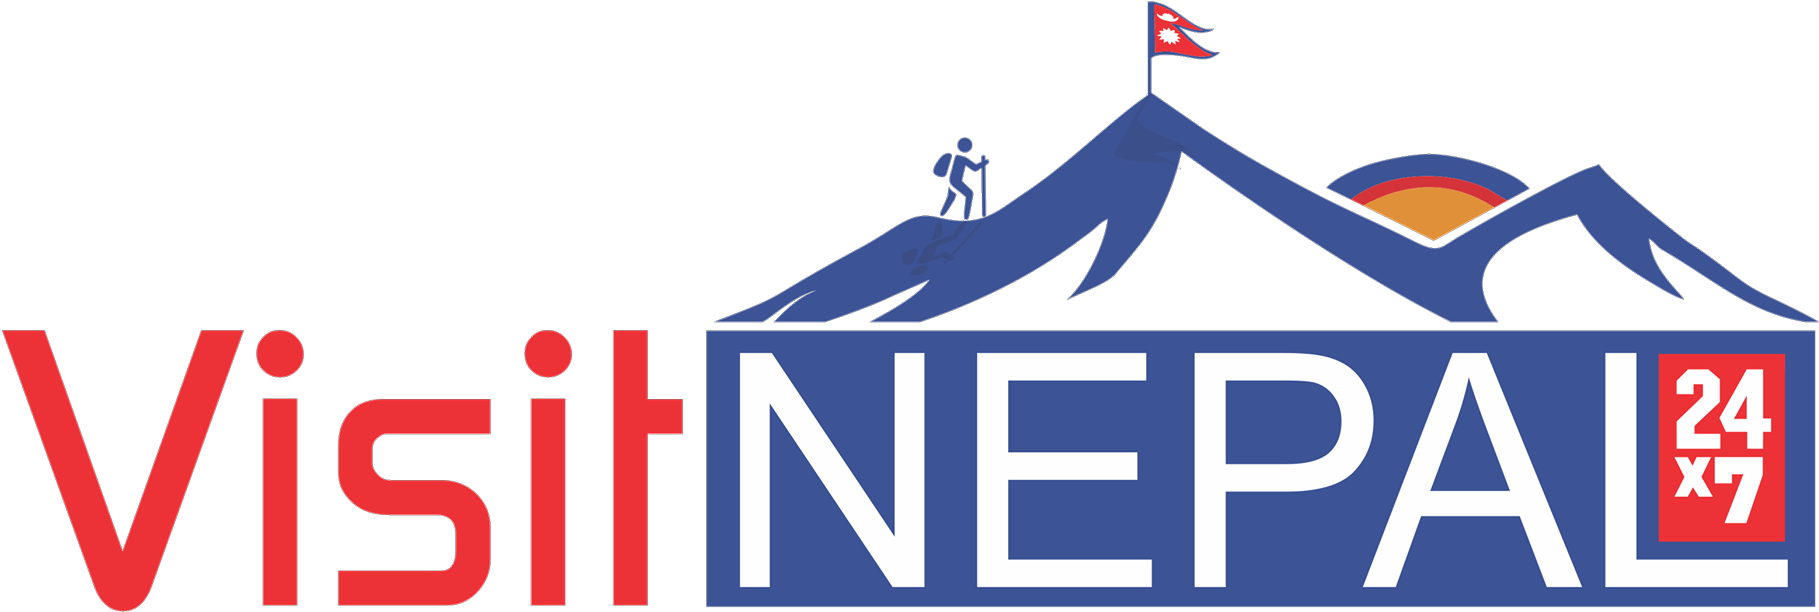 Visit Nepal_ Tourism Logo